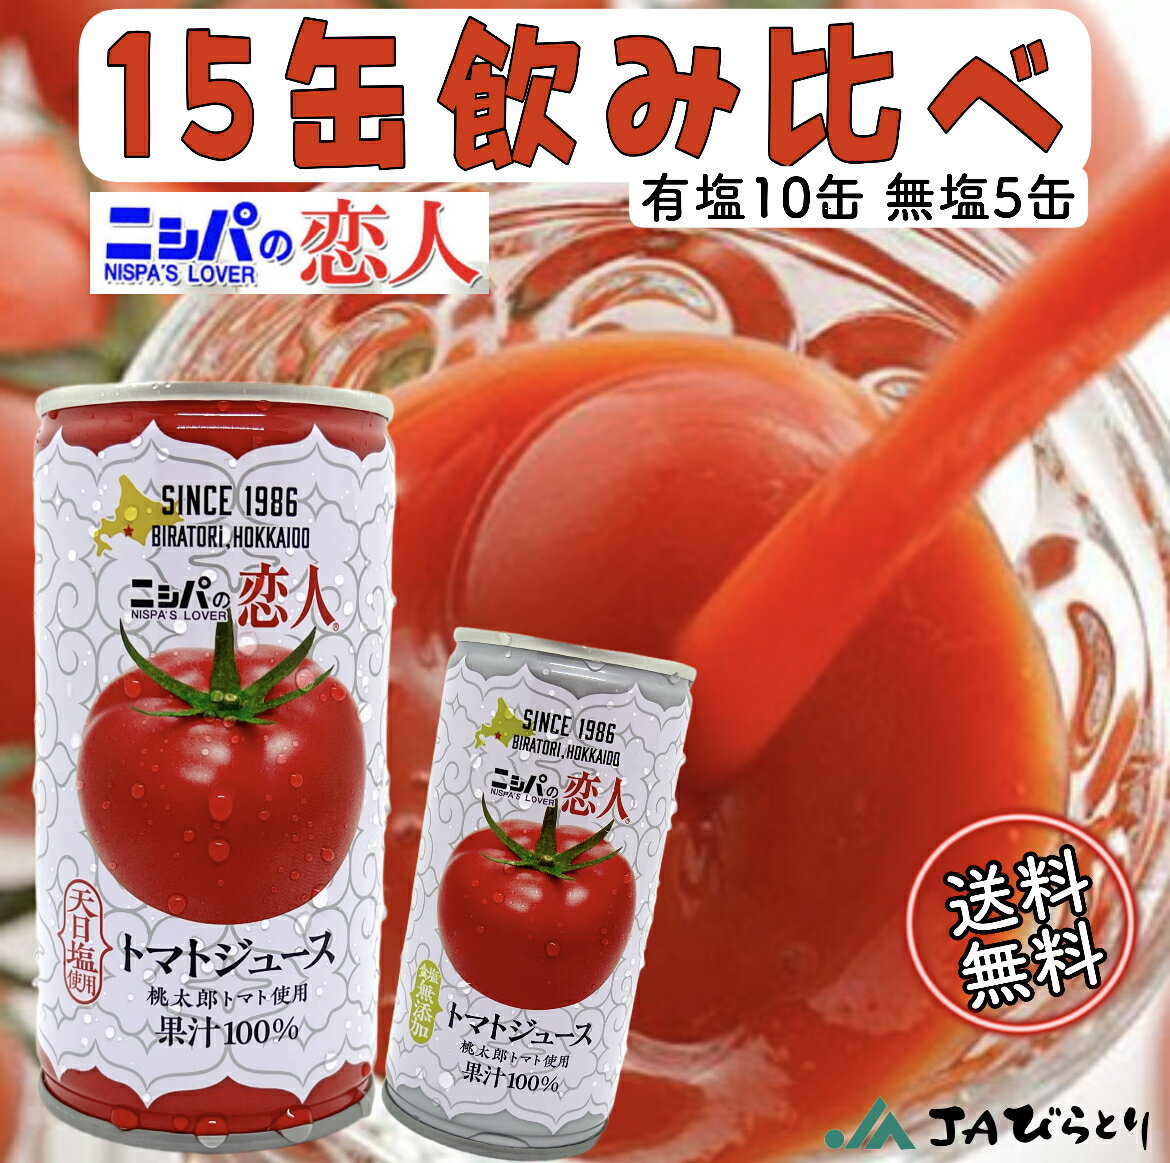 ニシパの恋人 トマトジュース 15缶飲み比べセッ...の商品画像